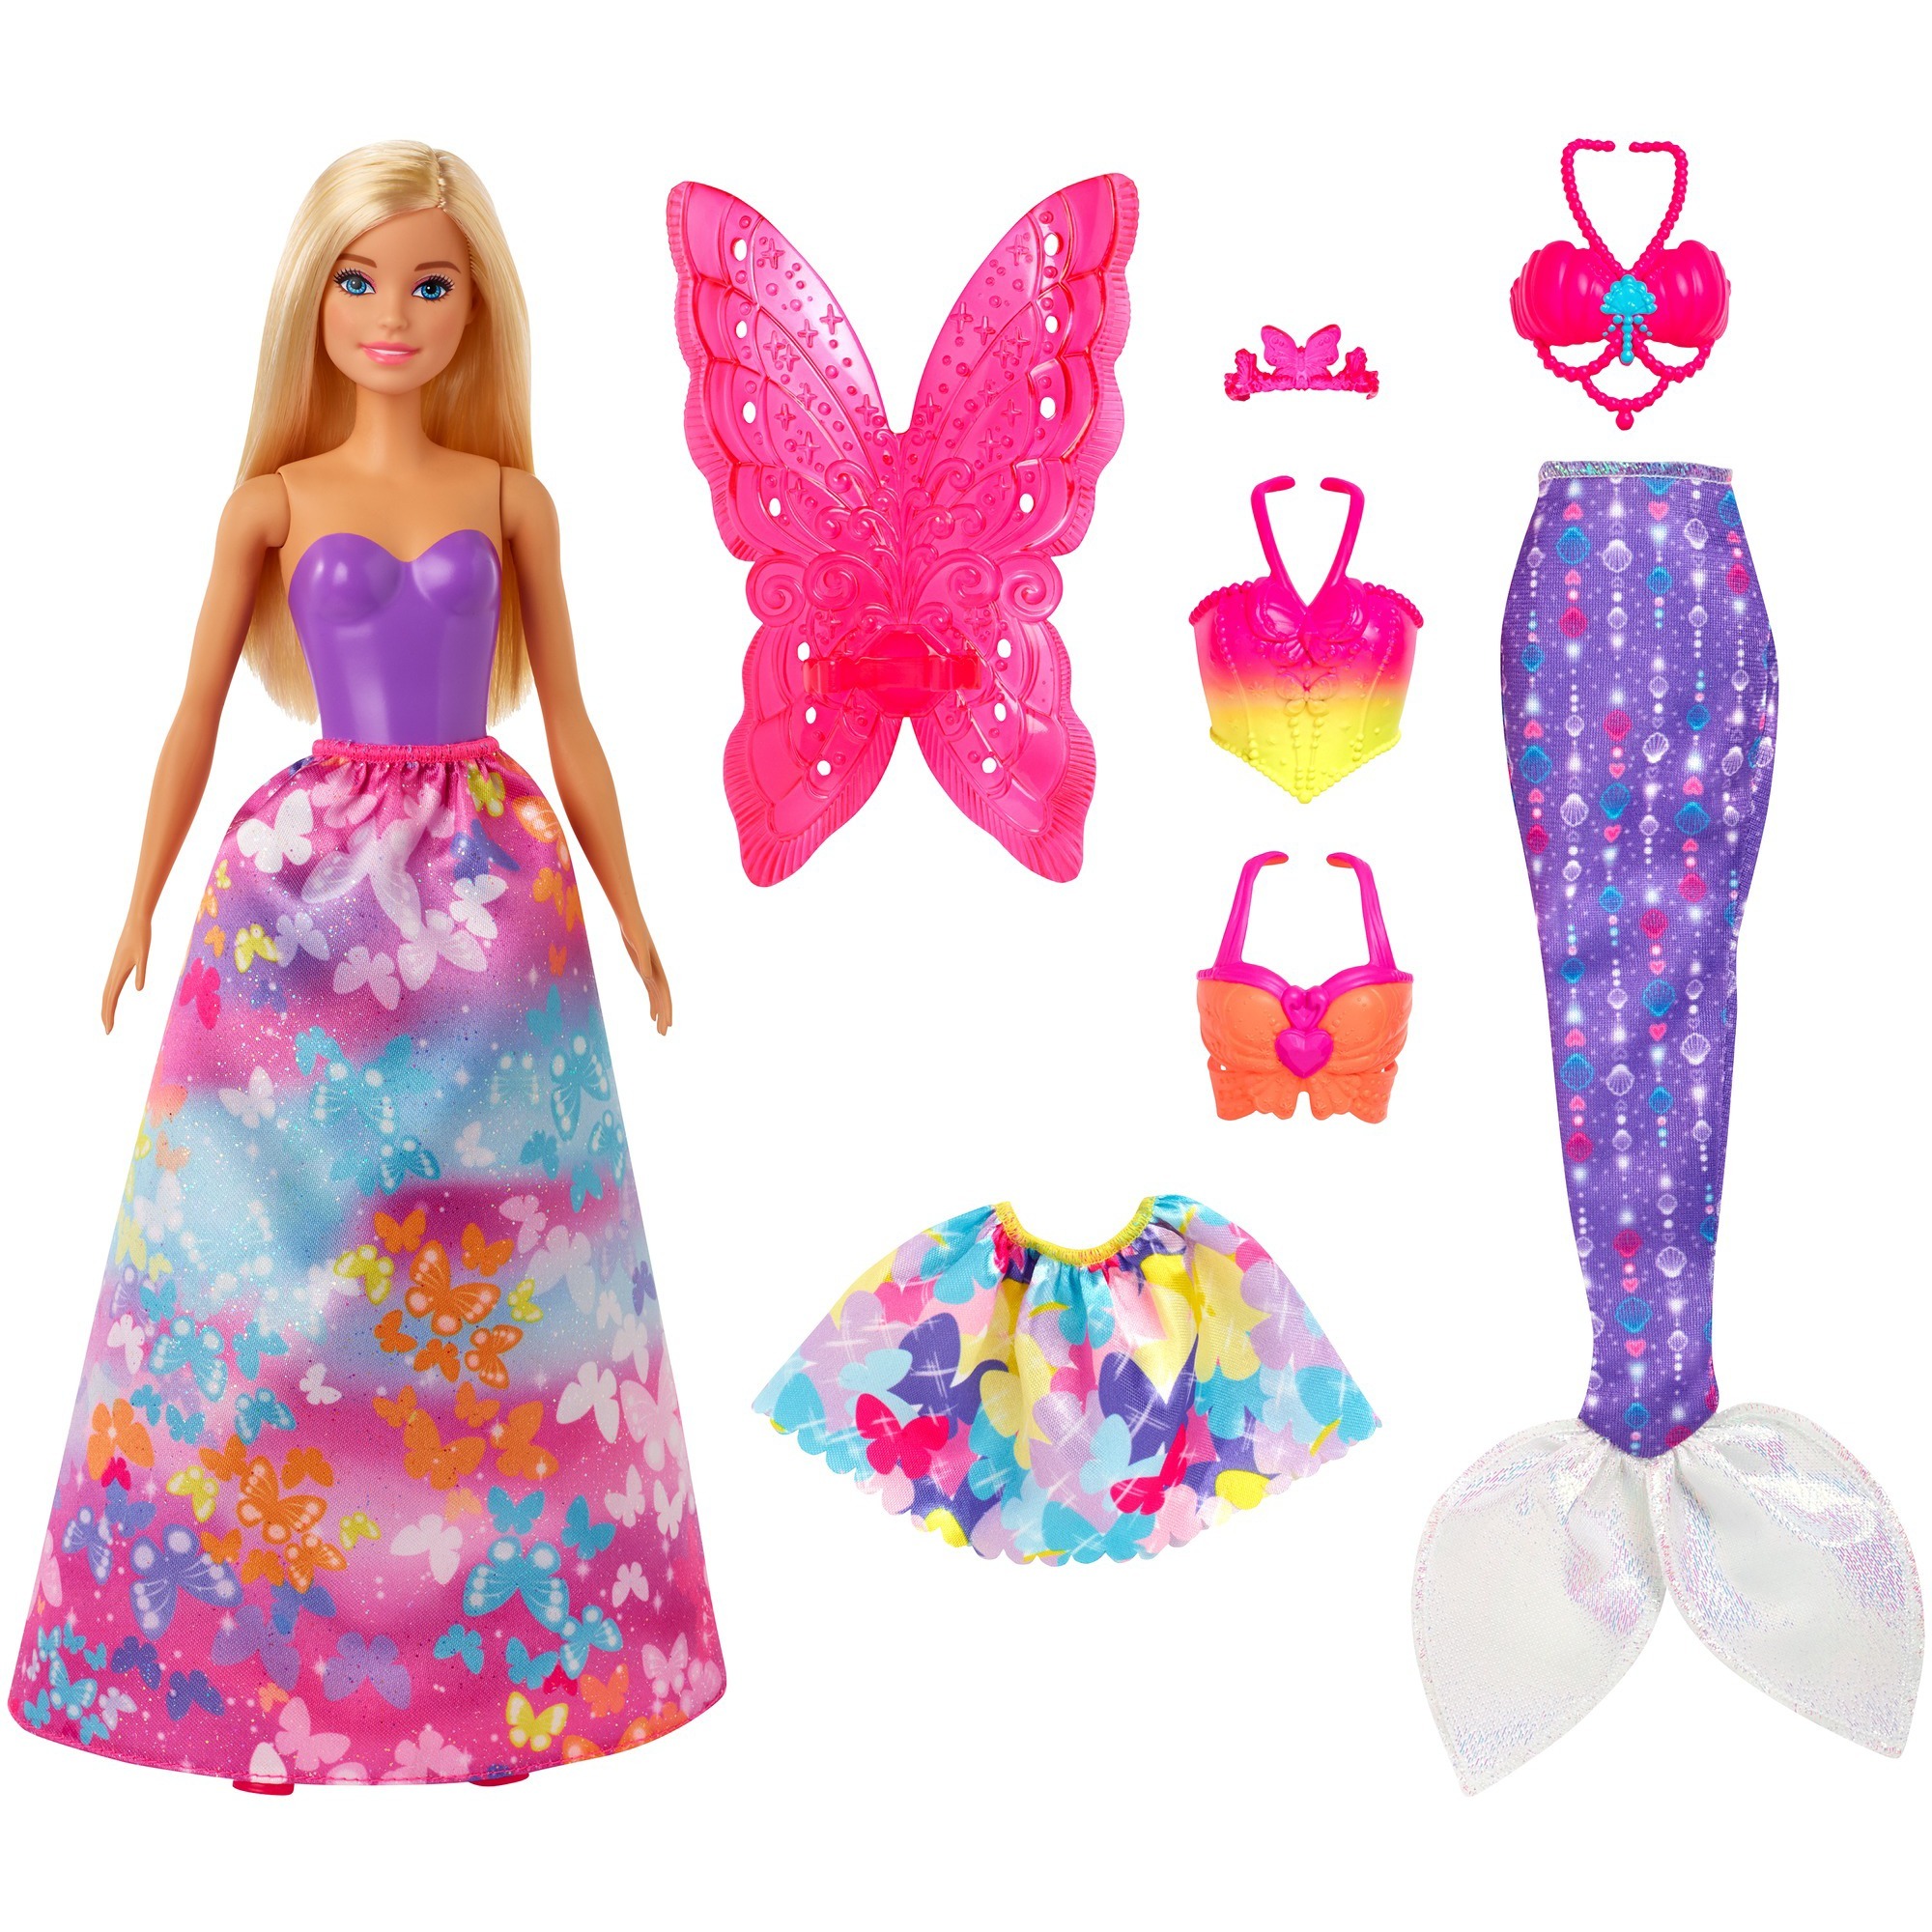 Image of Alternate - Barbie Dreamtopia 3-in1-Fantasie Spielset (blond), Puppe online einkaufen bei Alternate